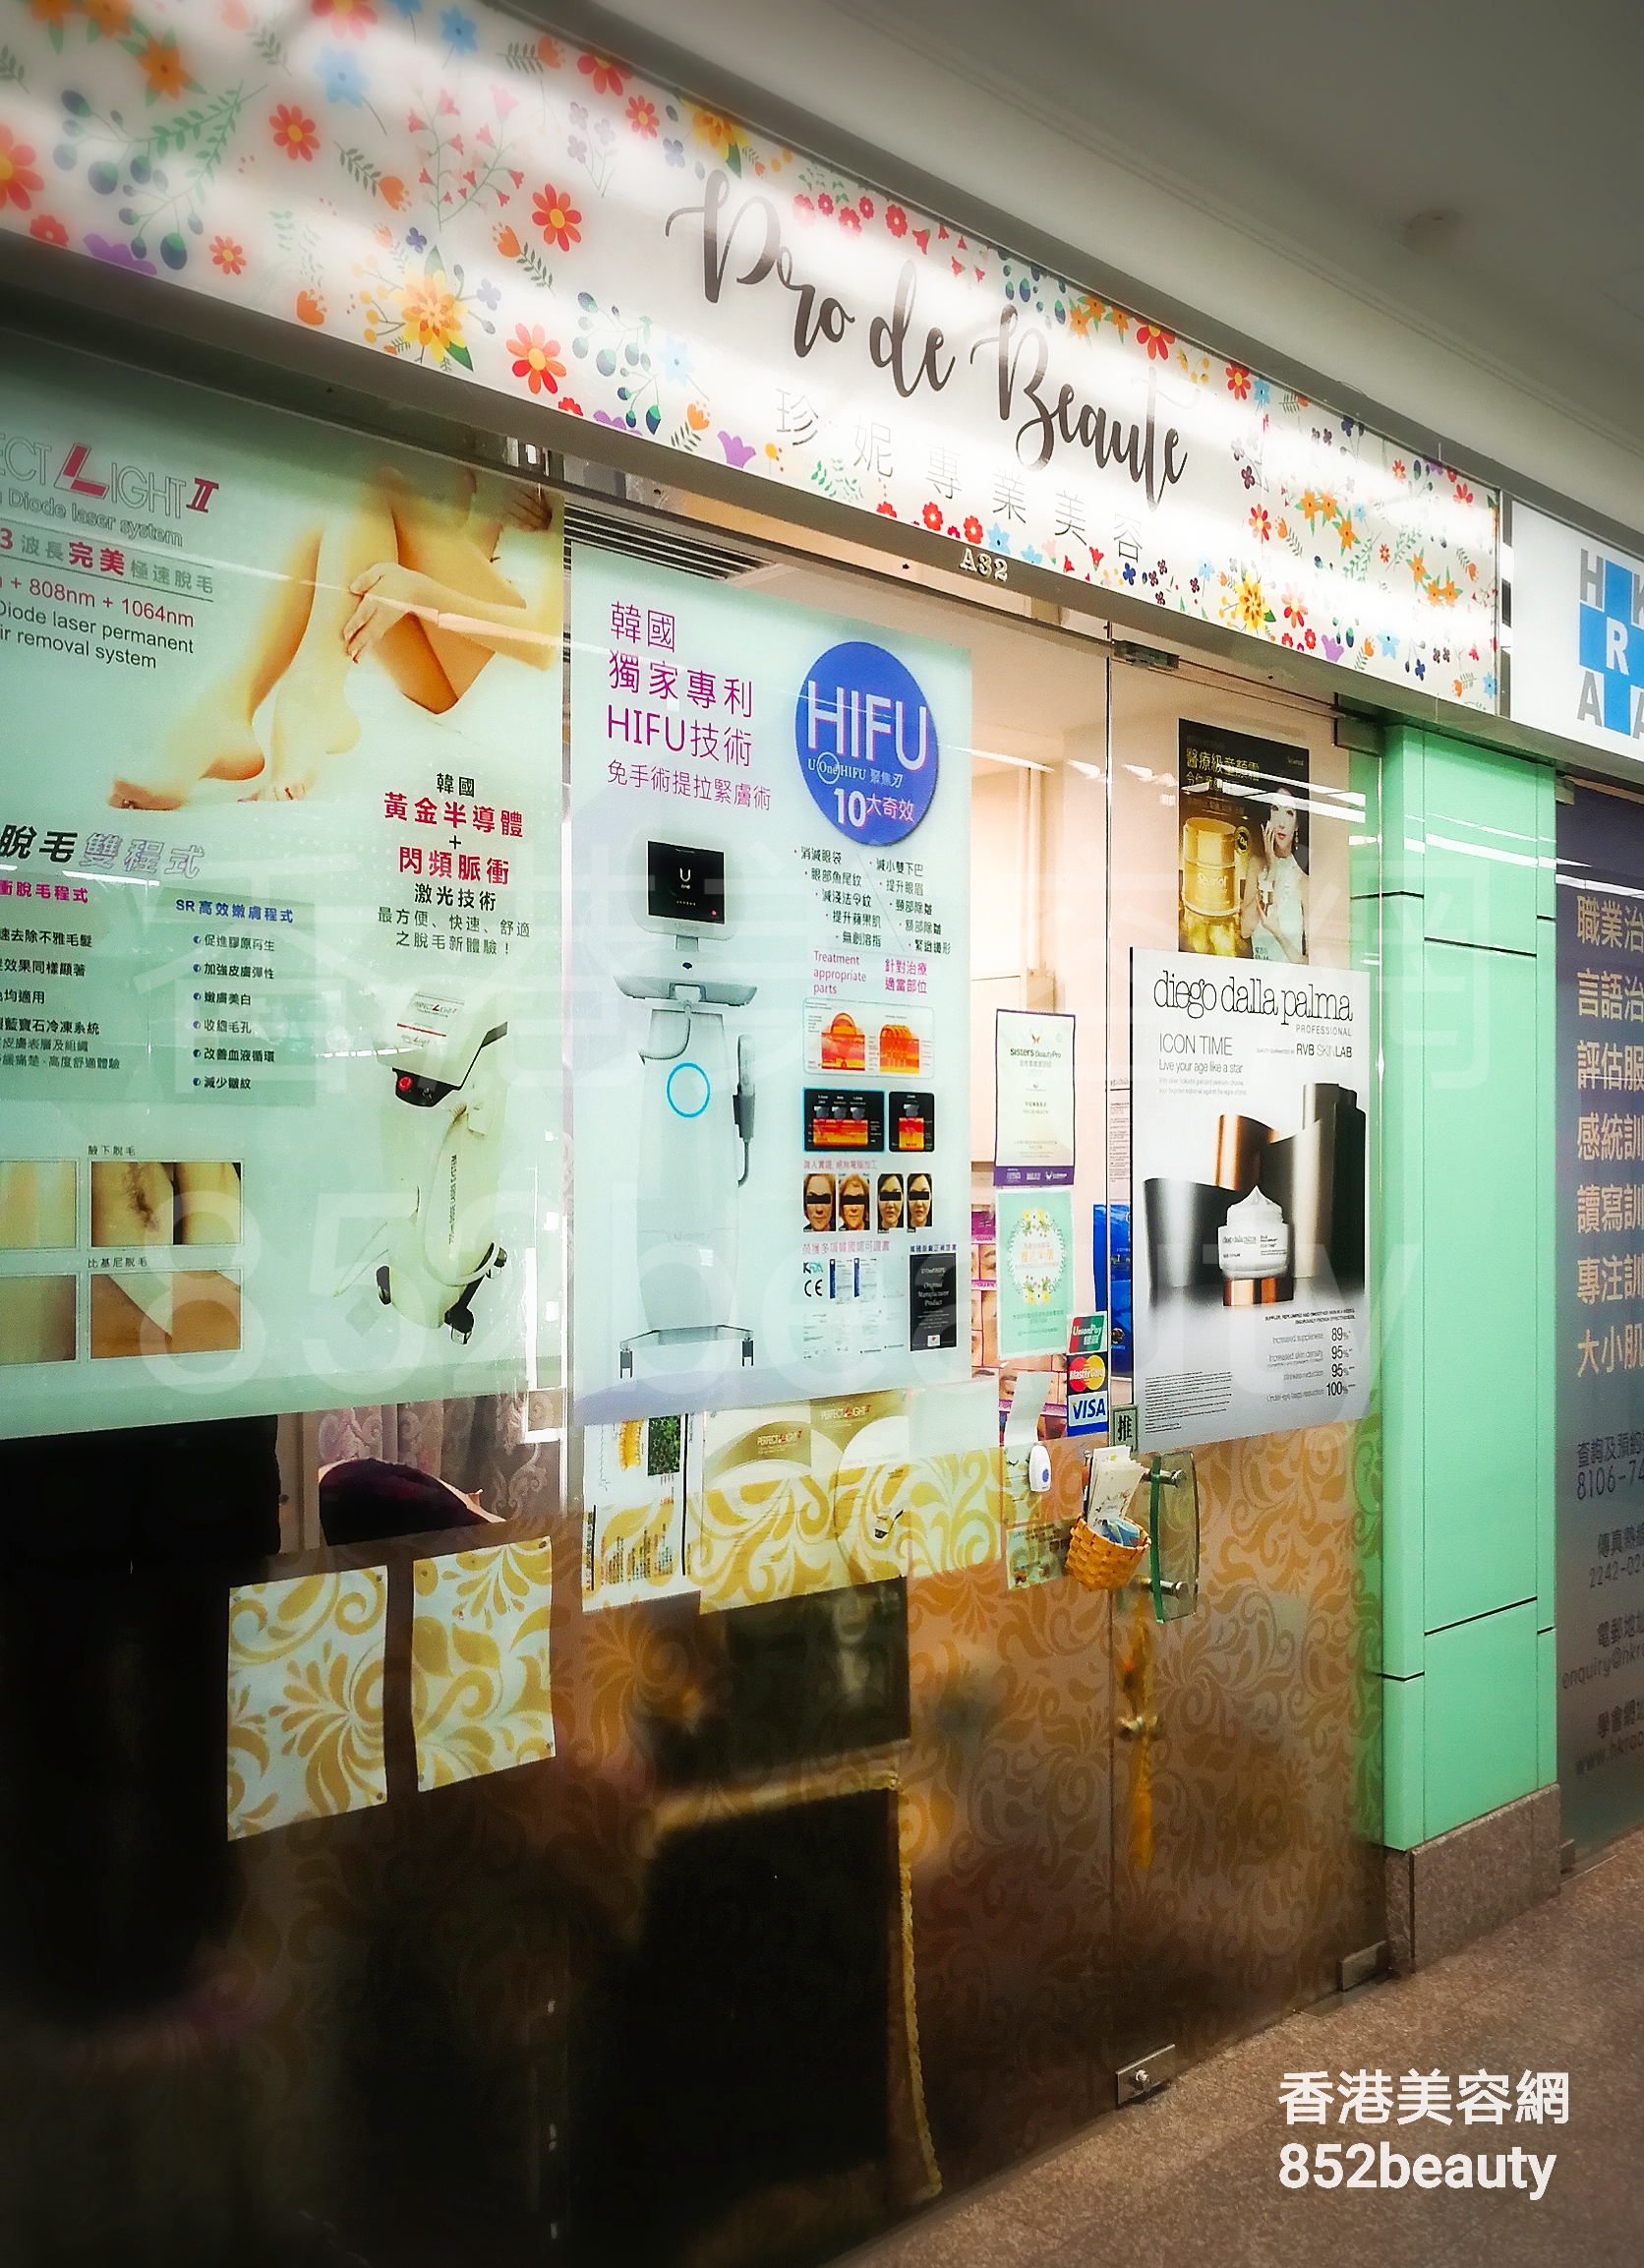 香港美容網 Hong Kong Beauty Salon 美容院 / 美容師: Pro de Beauté 珍妮專業美容